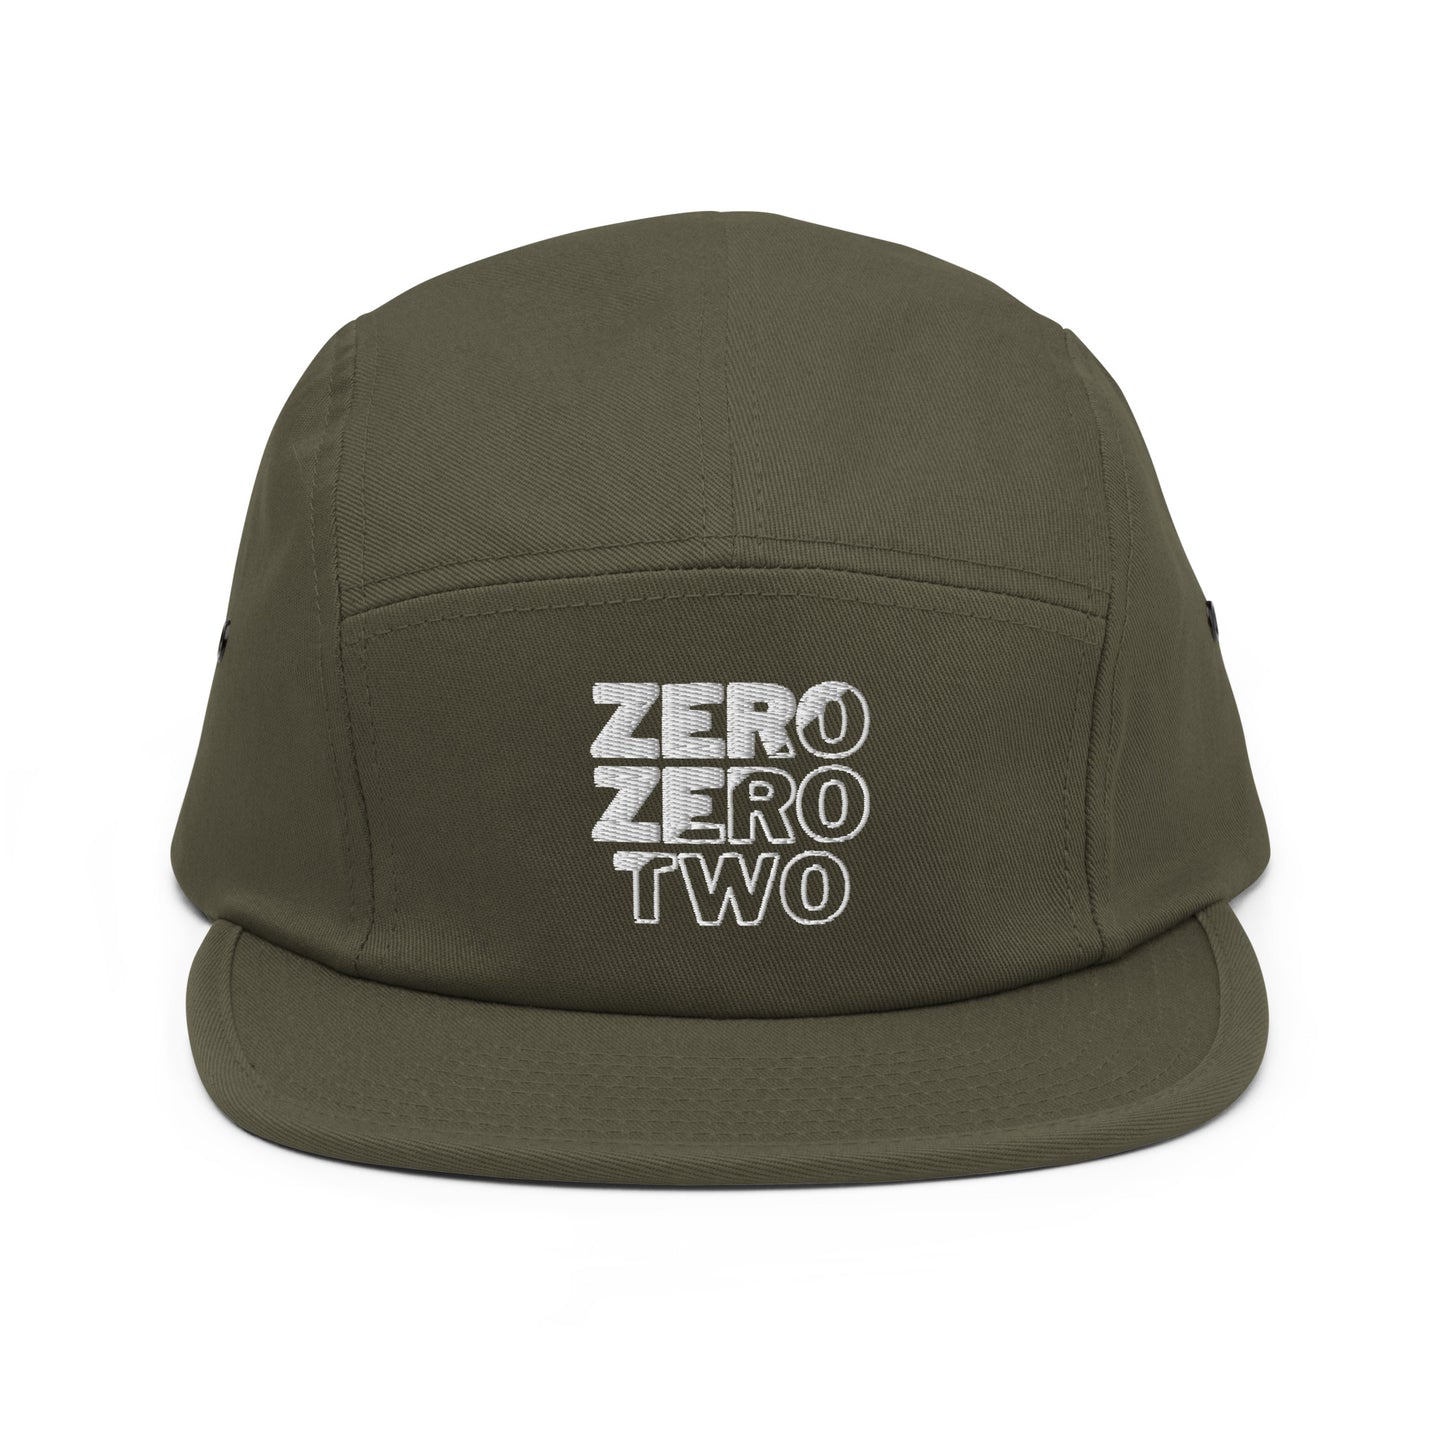 Zero Zero Two Hat